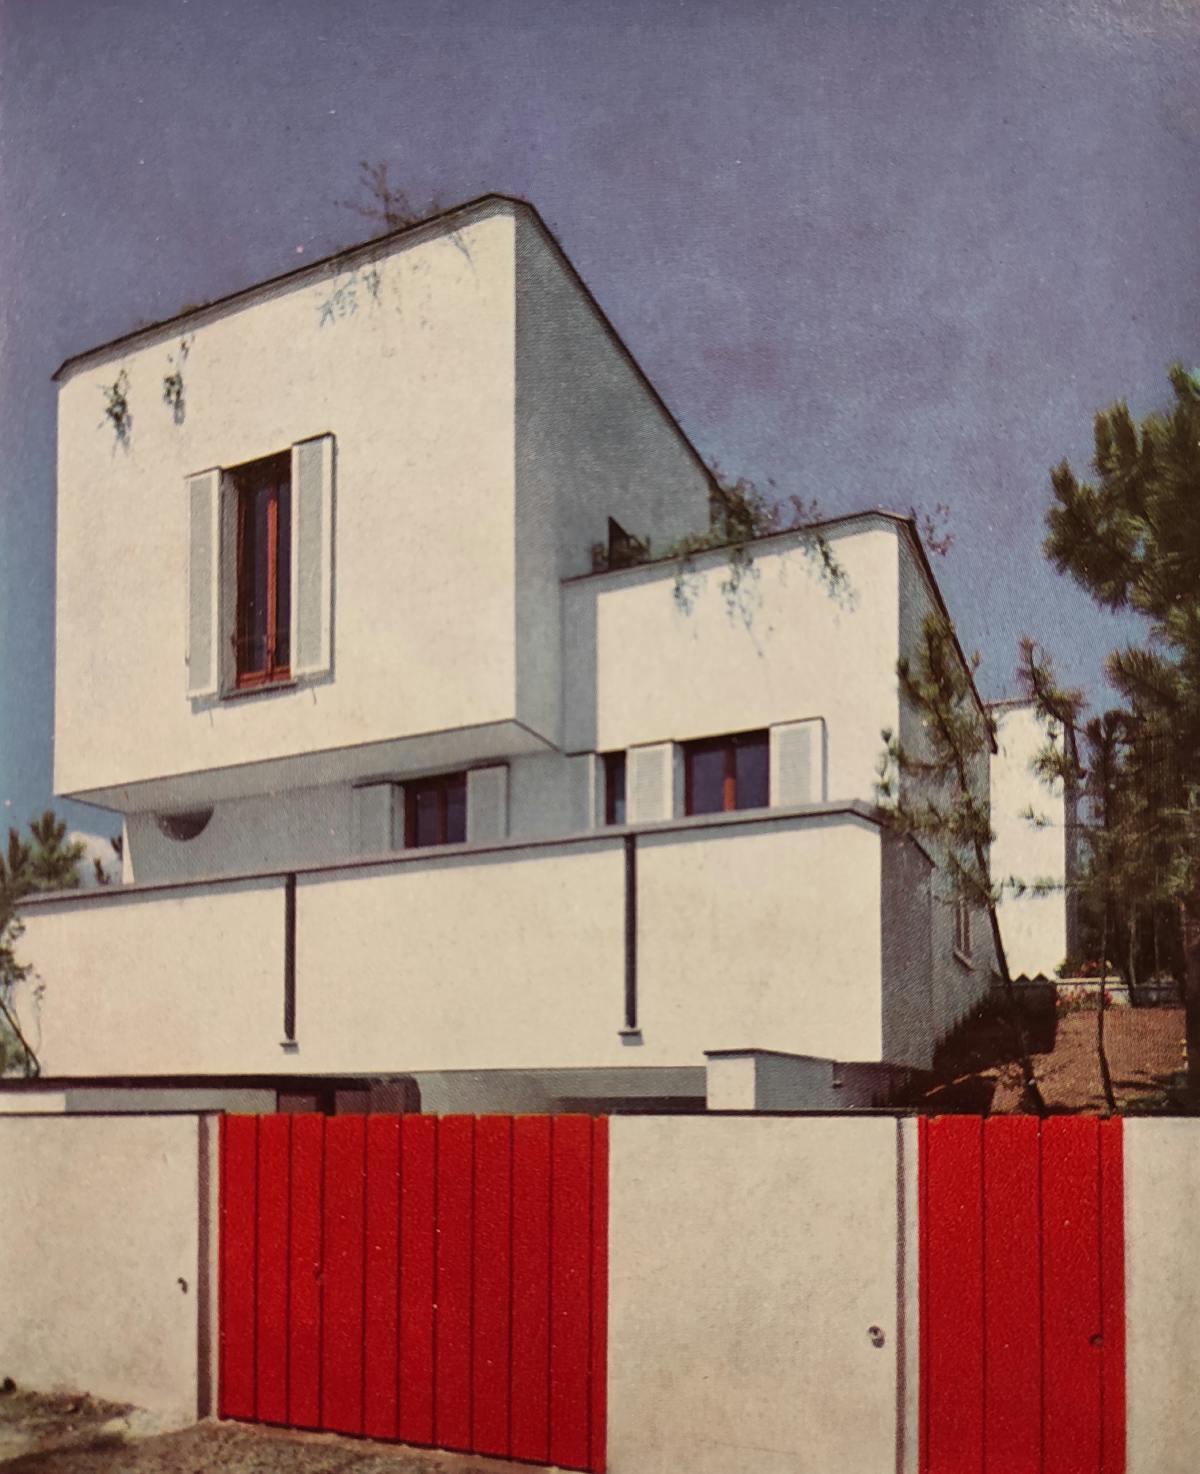 Casa Arosio, Arenzano, Da R. Aloi,Ville in Italia, Hoepli, Milano 1960